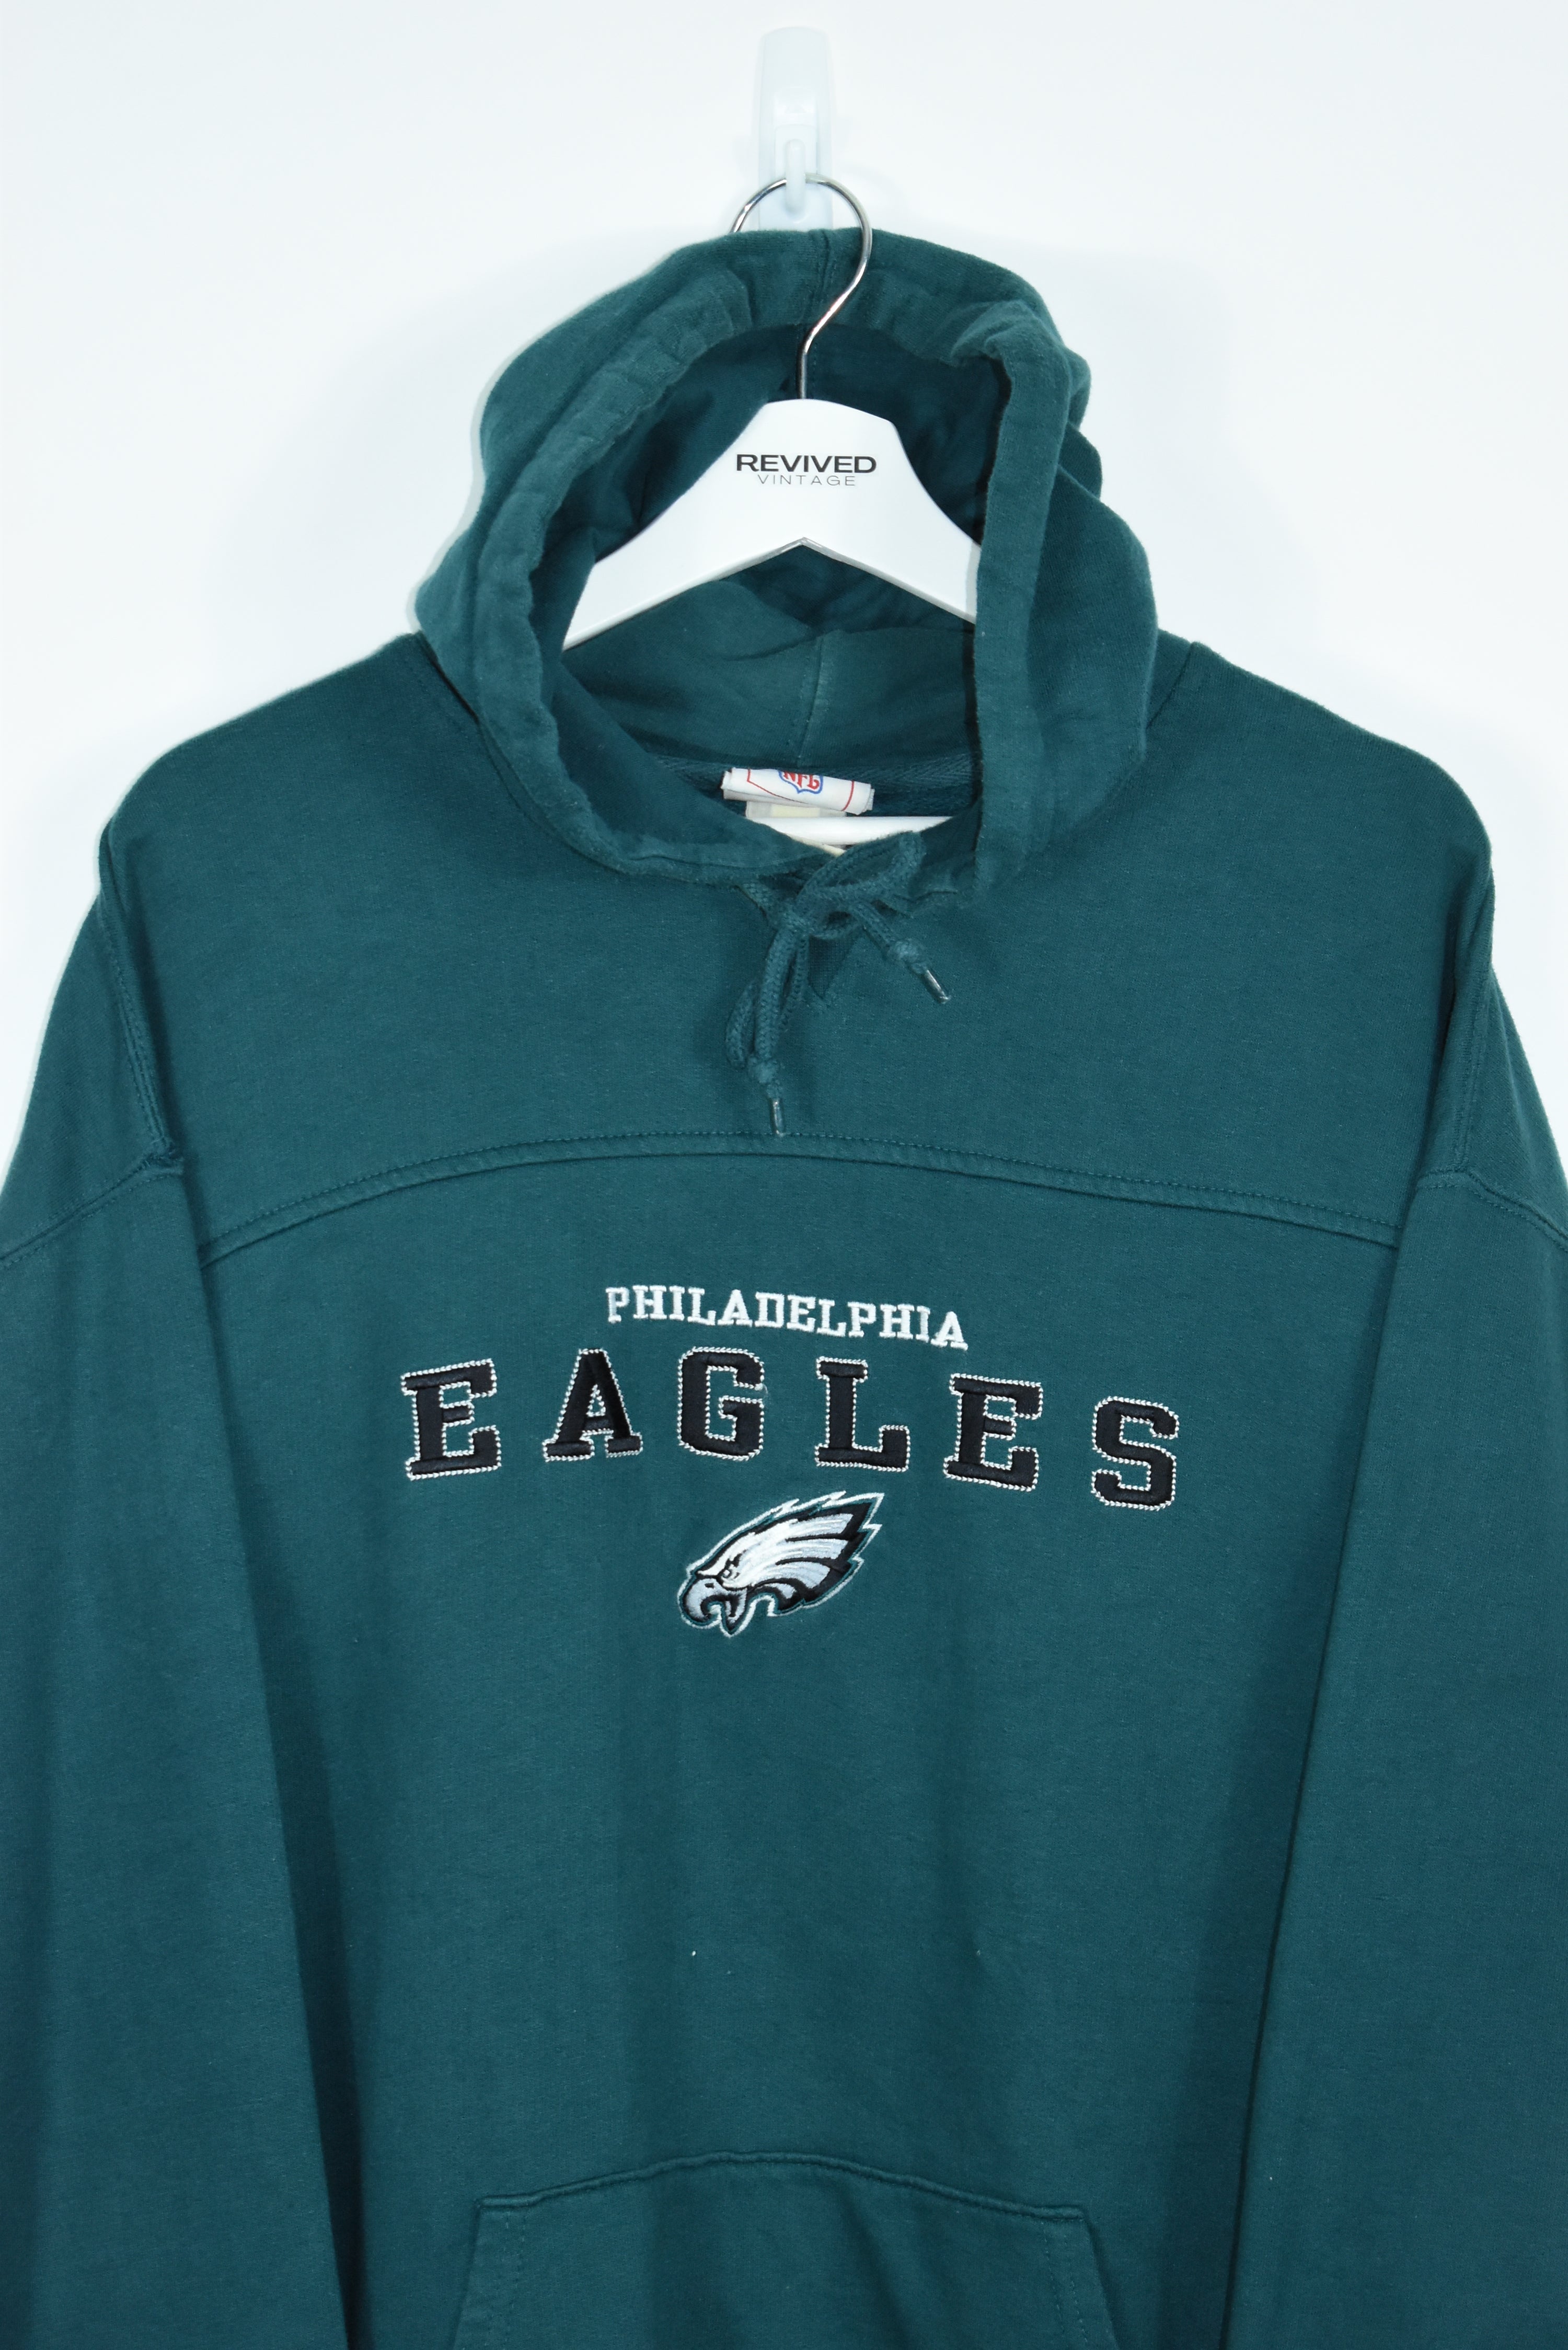 Vintage Philladelphia Eagles Embroidery Hoodie XLARGE